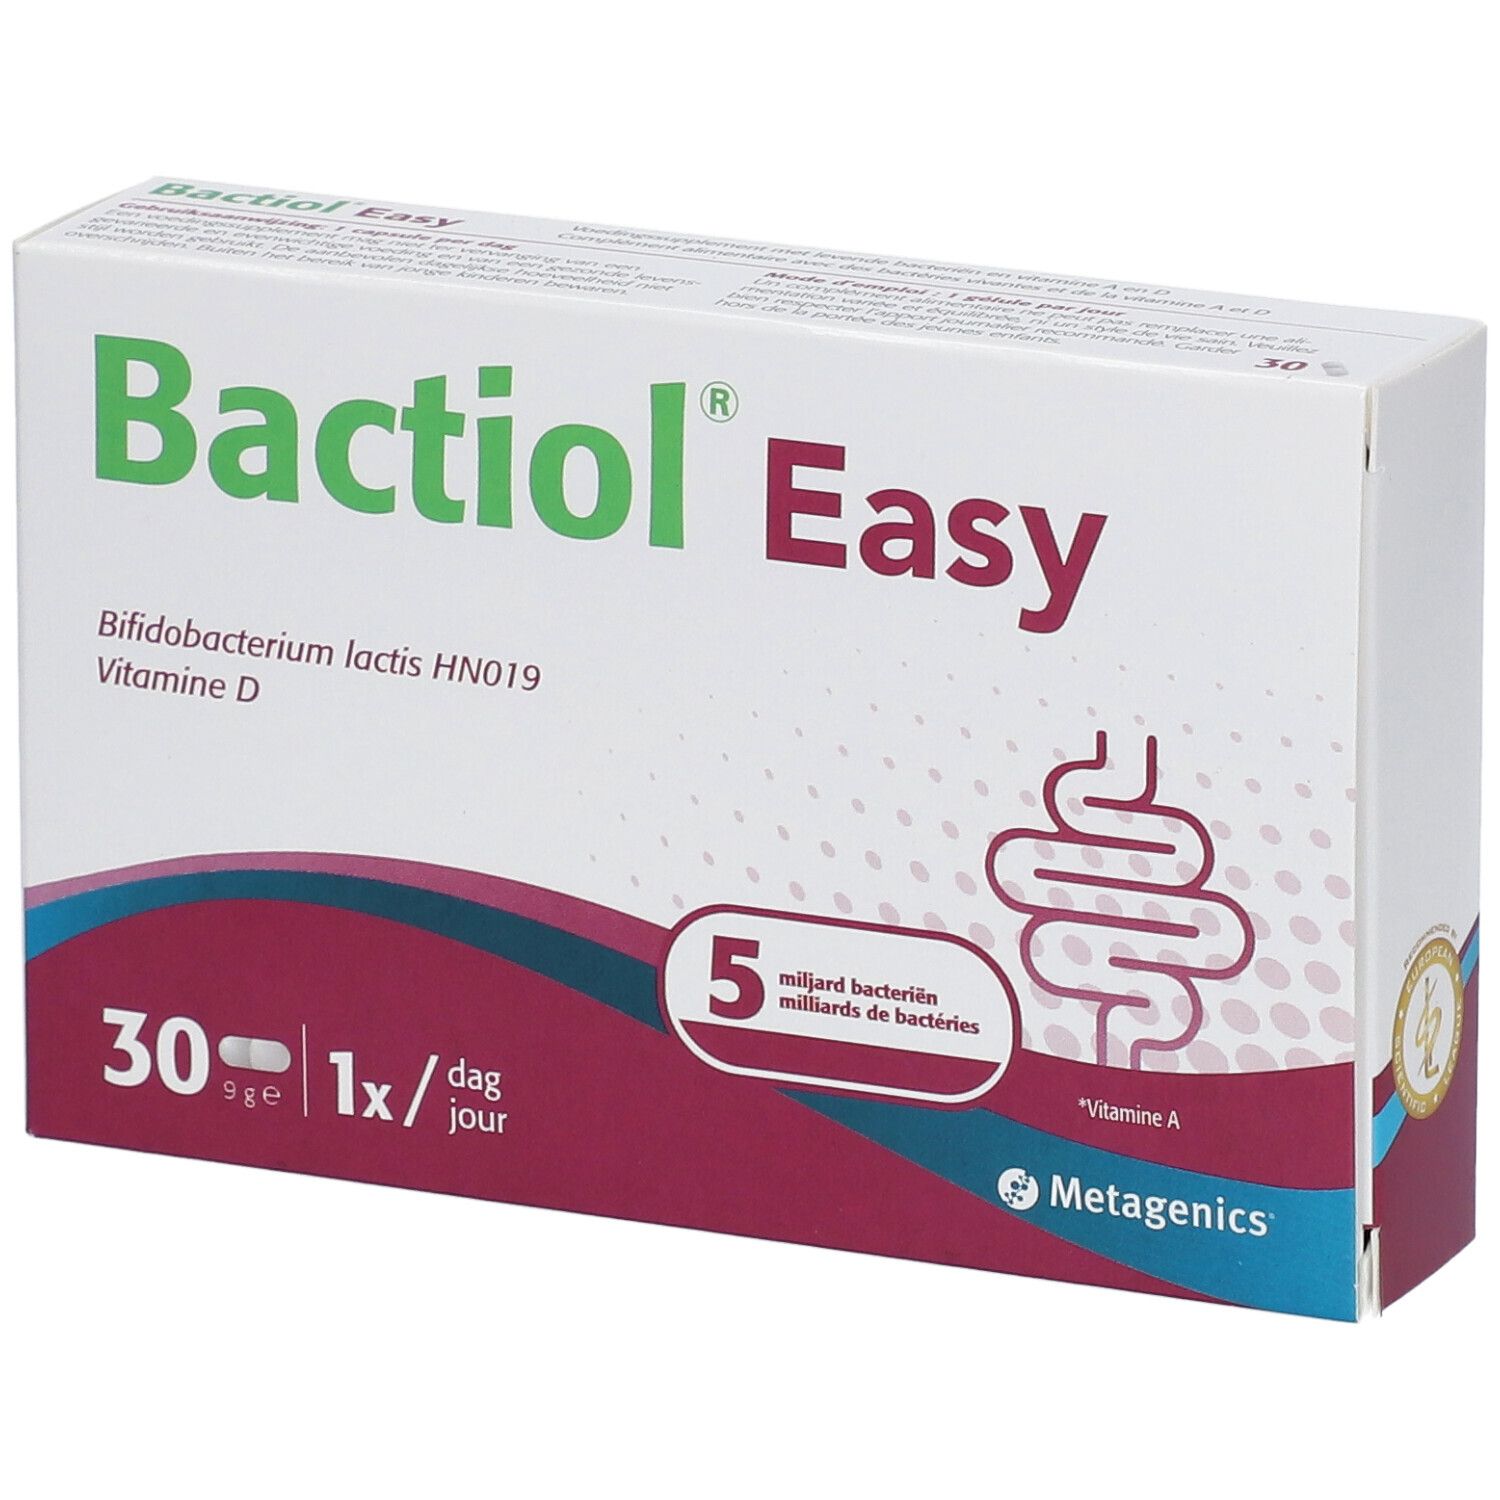 Bactiol® Easy